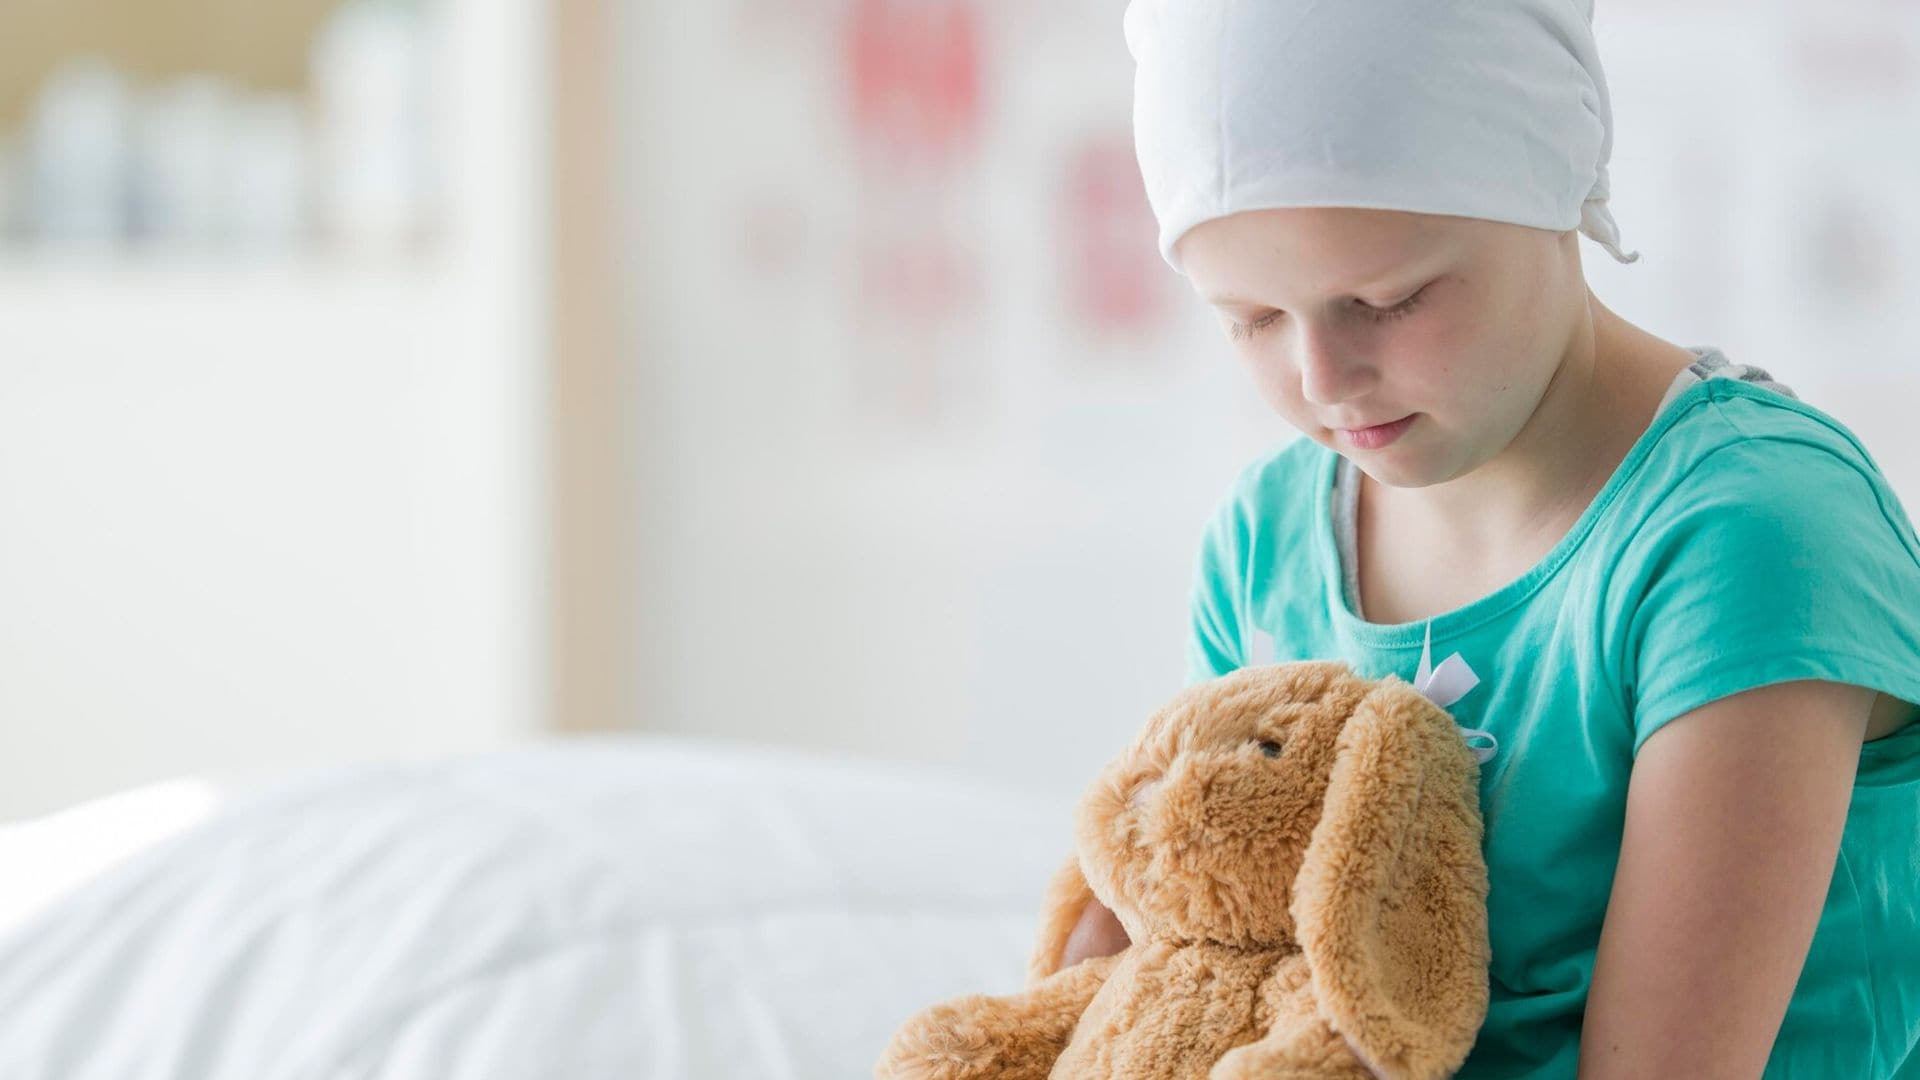 Qué importancia tiene detectar a tiempo la leucemia infantil, uno de los cánceres más frecuentes en menores de edad